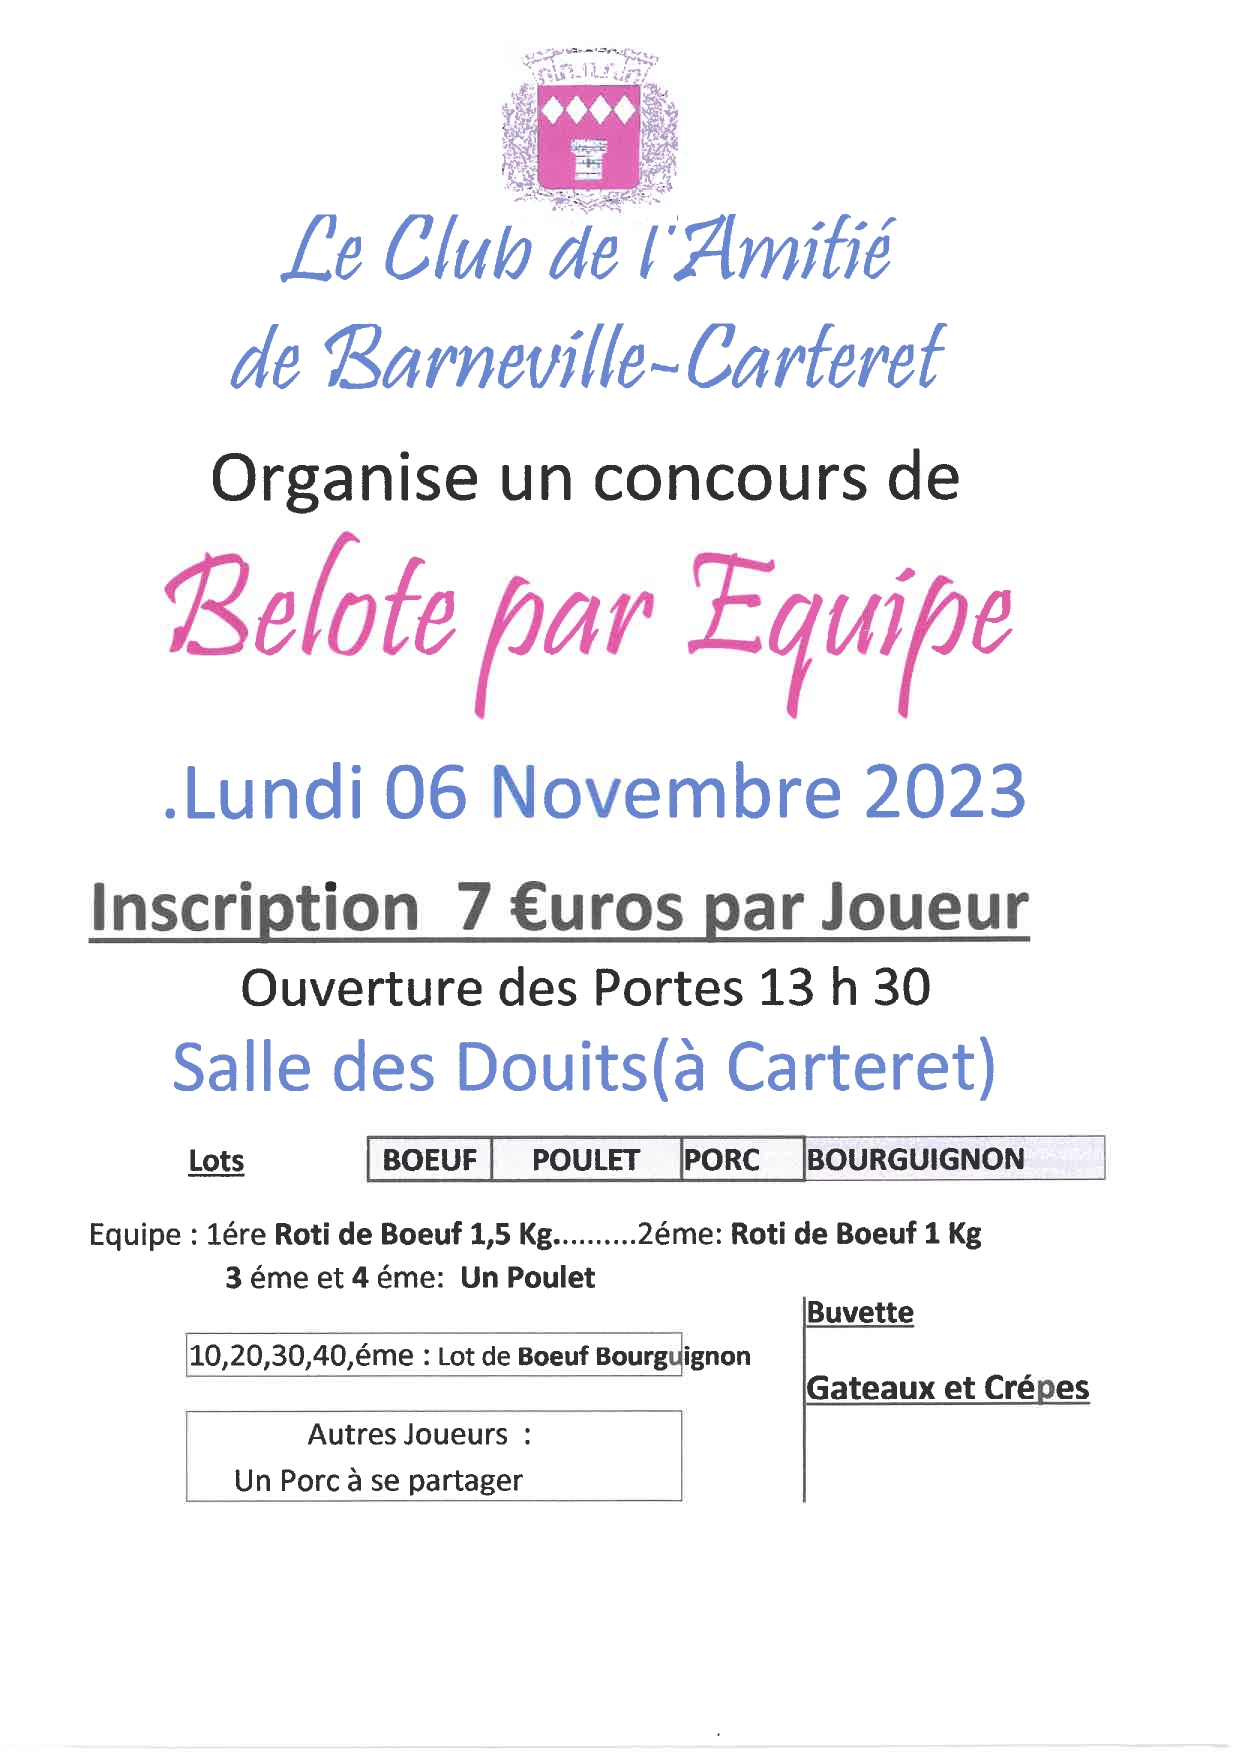 BELOTE PAR EQUIPE - Le Club de l'Amitié de Barneville-Carteret